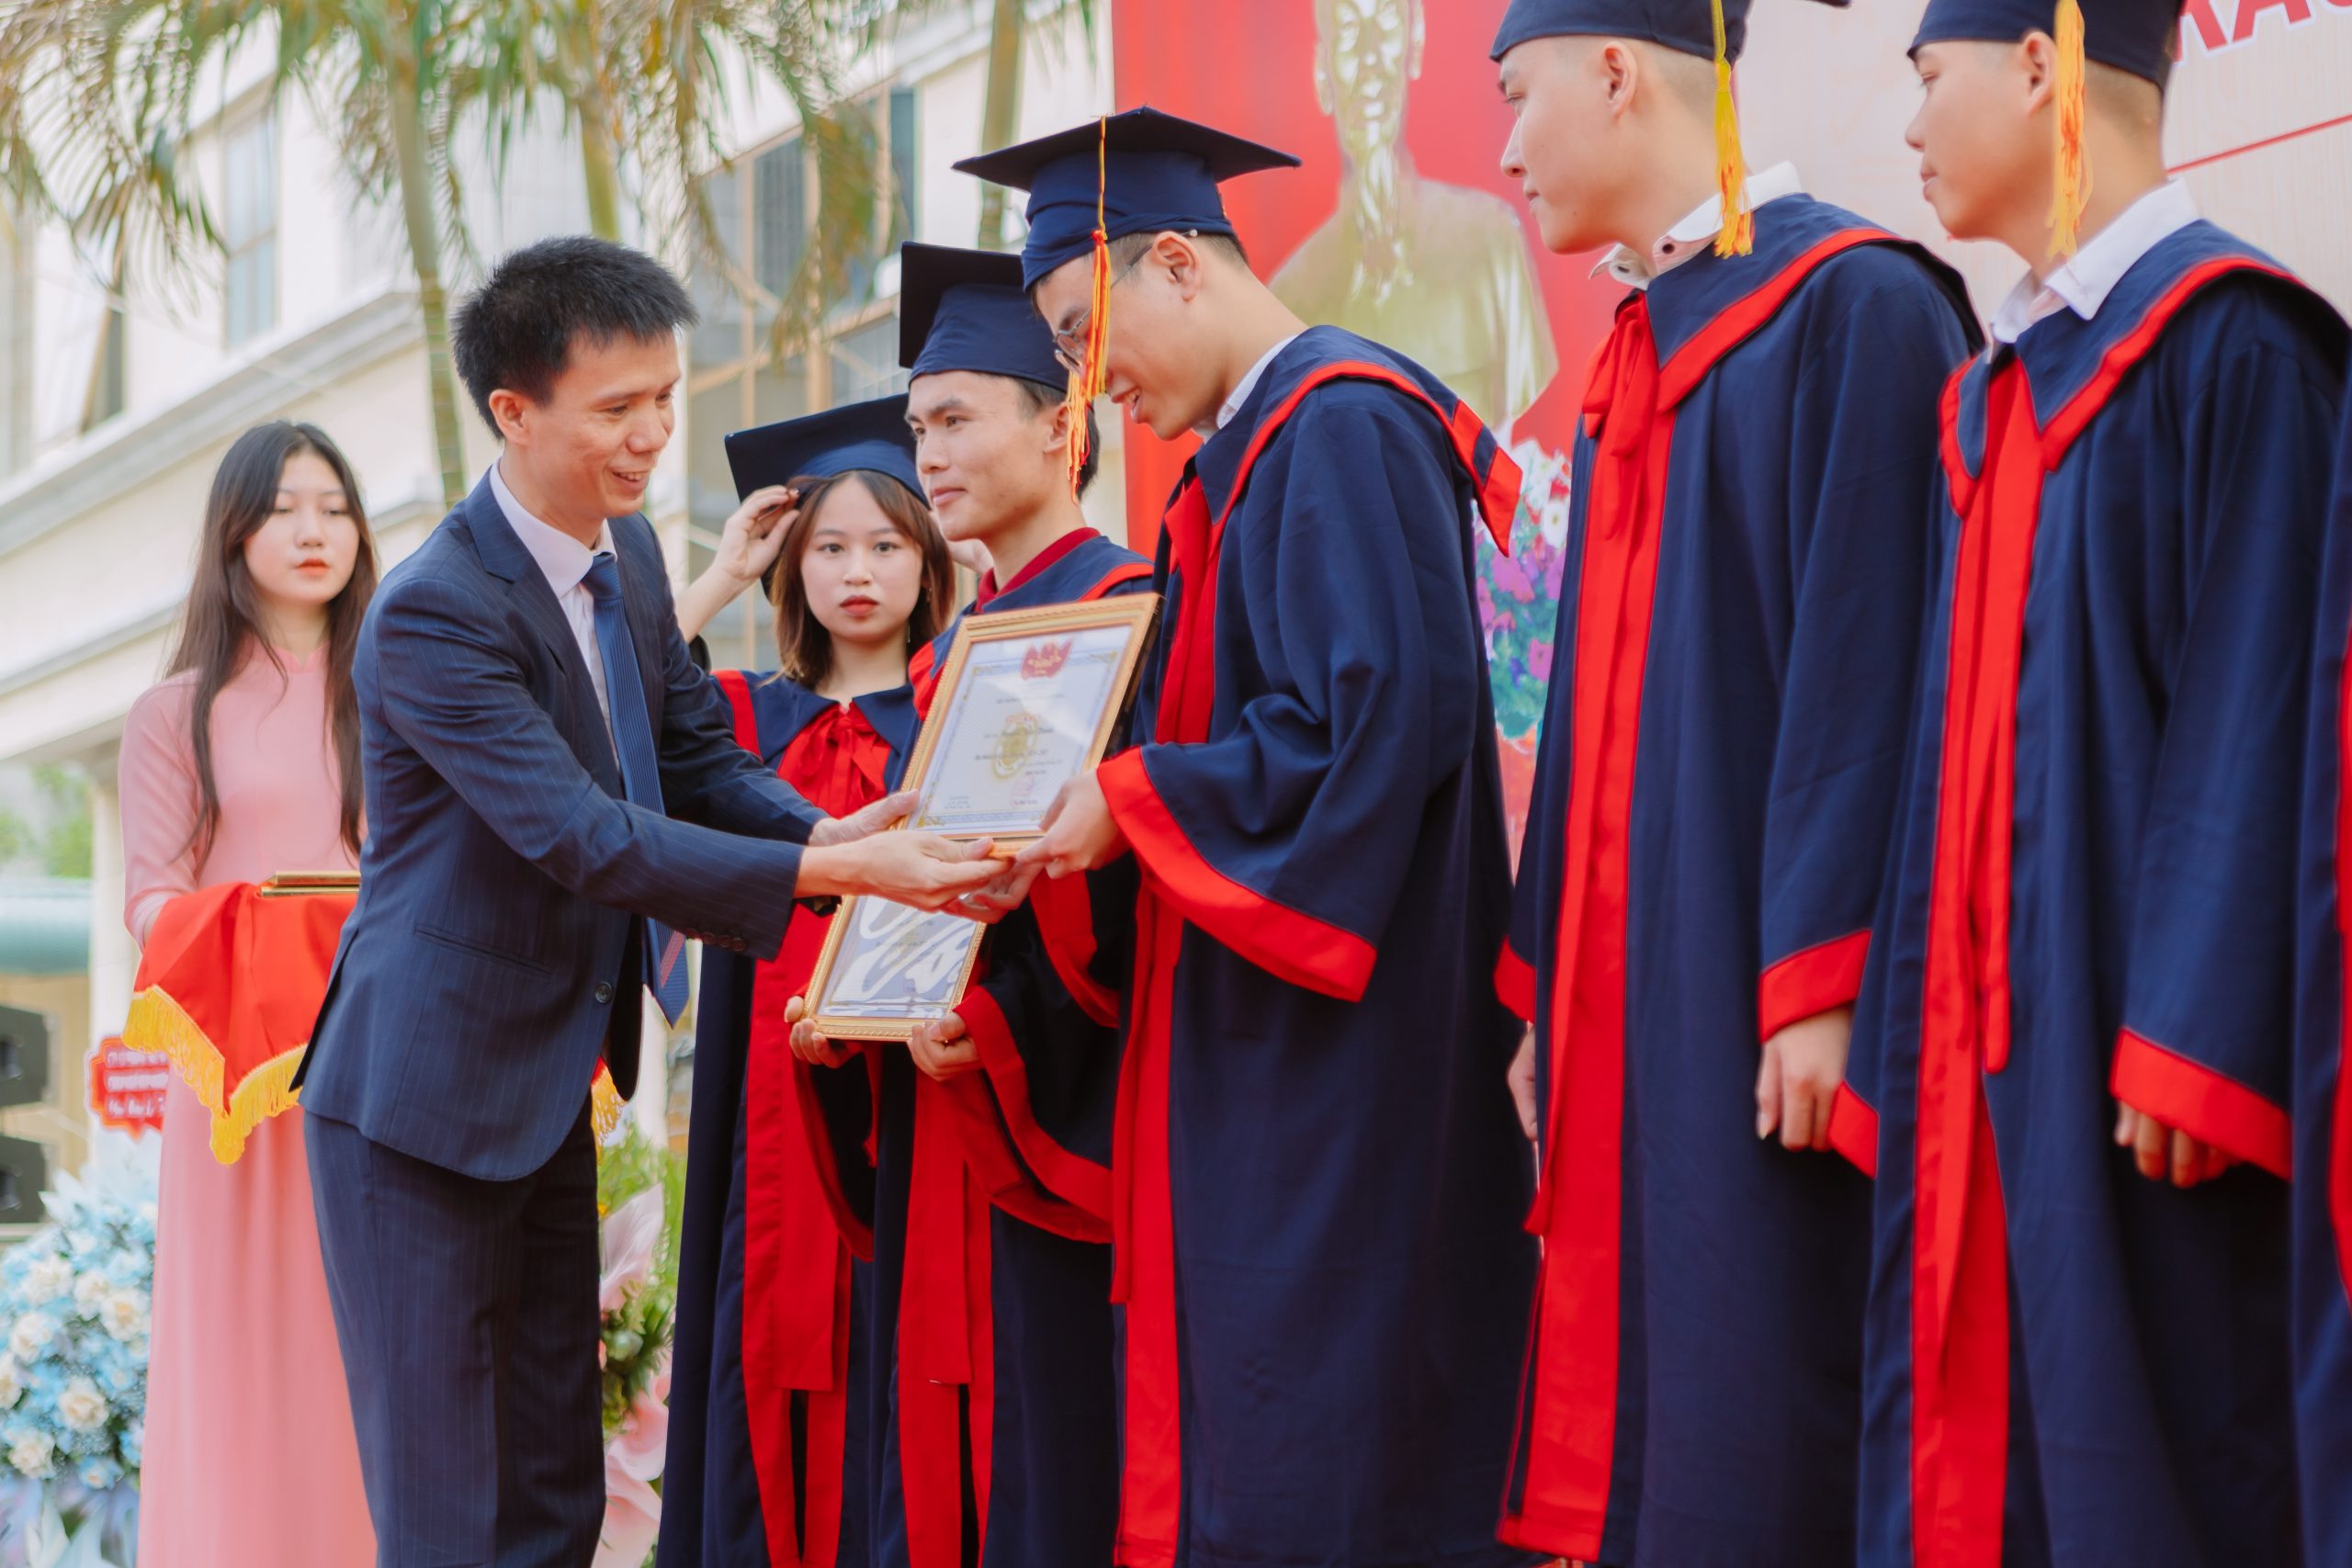 Thạc sĩ Nguyễn Văn Trường – Phó hiệu trưởng nhà trường trao giấy khen cho các em sinh viên đạt thành tích cao trong toàn khóa học